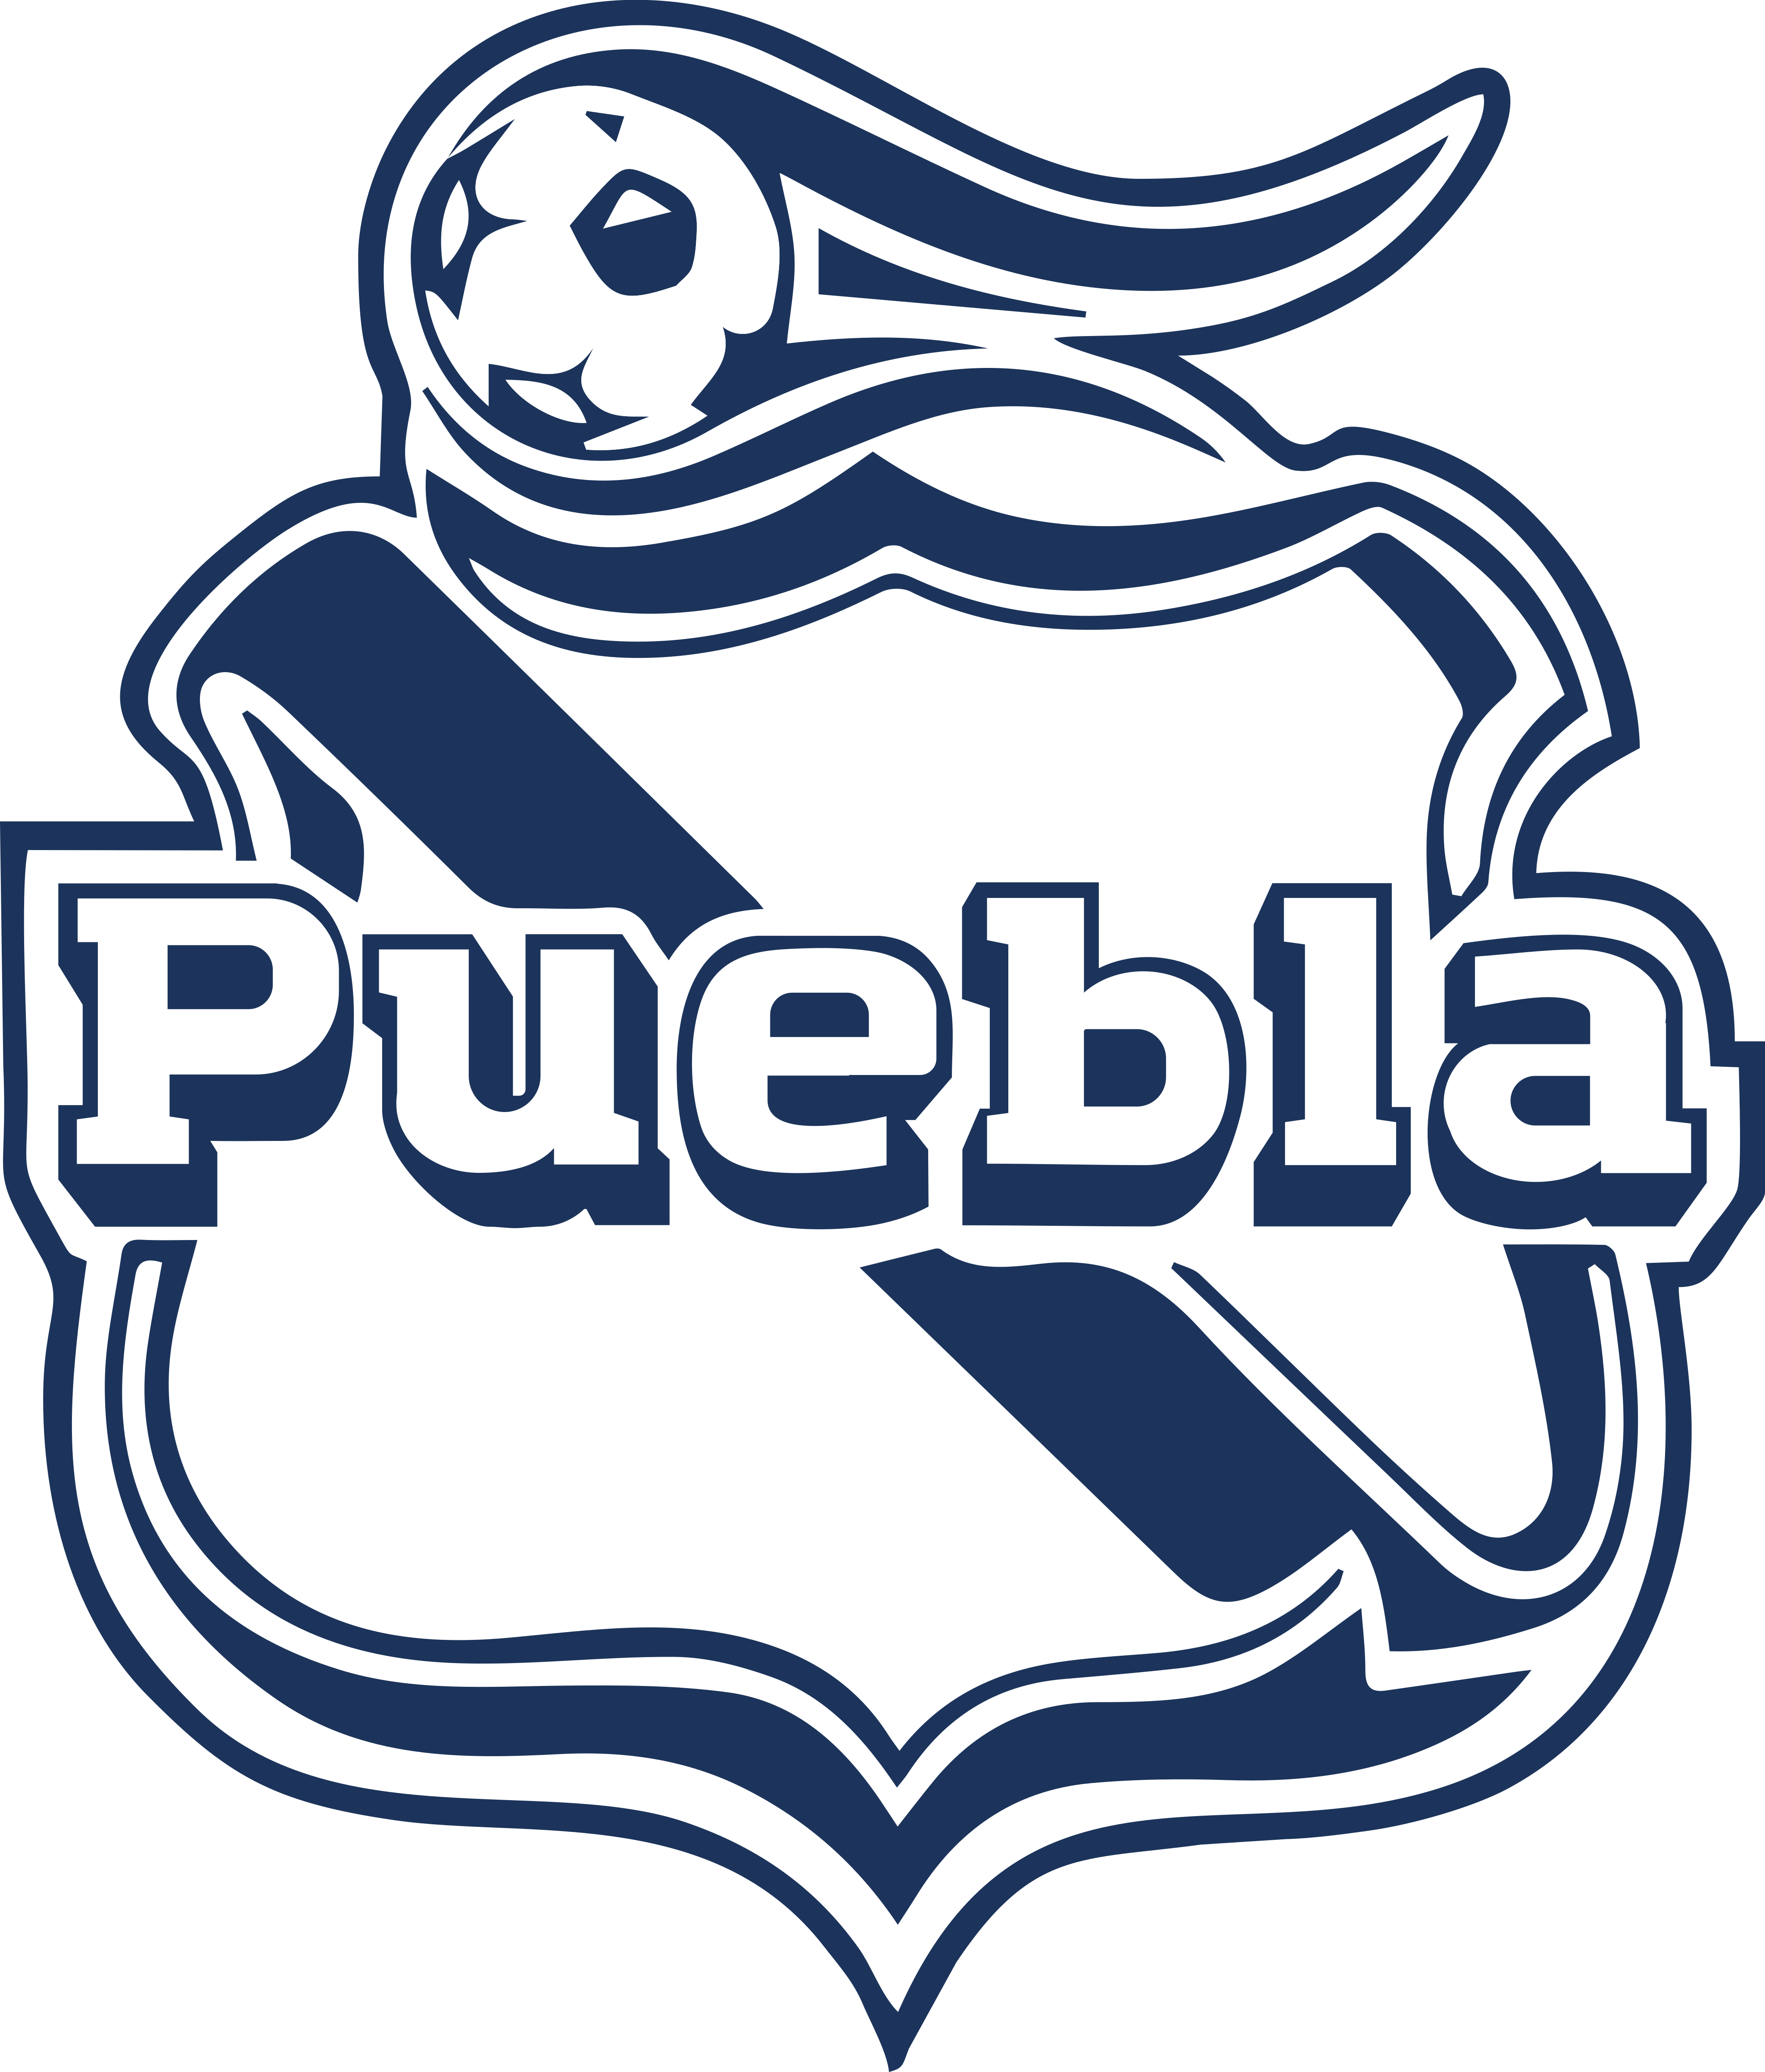 club puebla logo - Club Puebla Logo